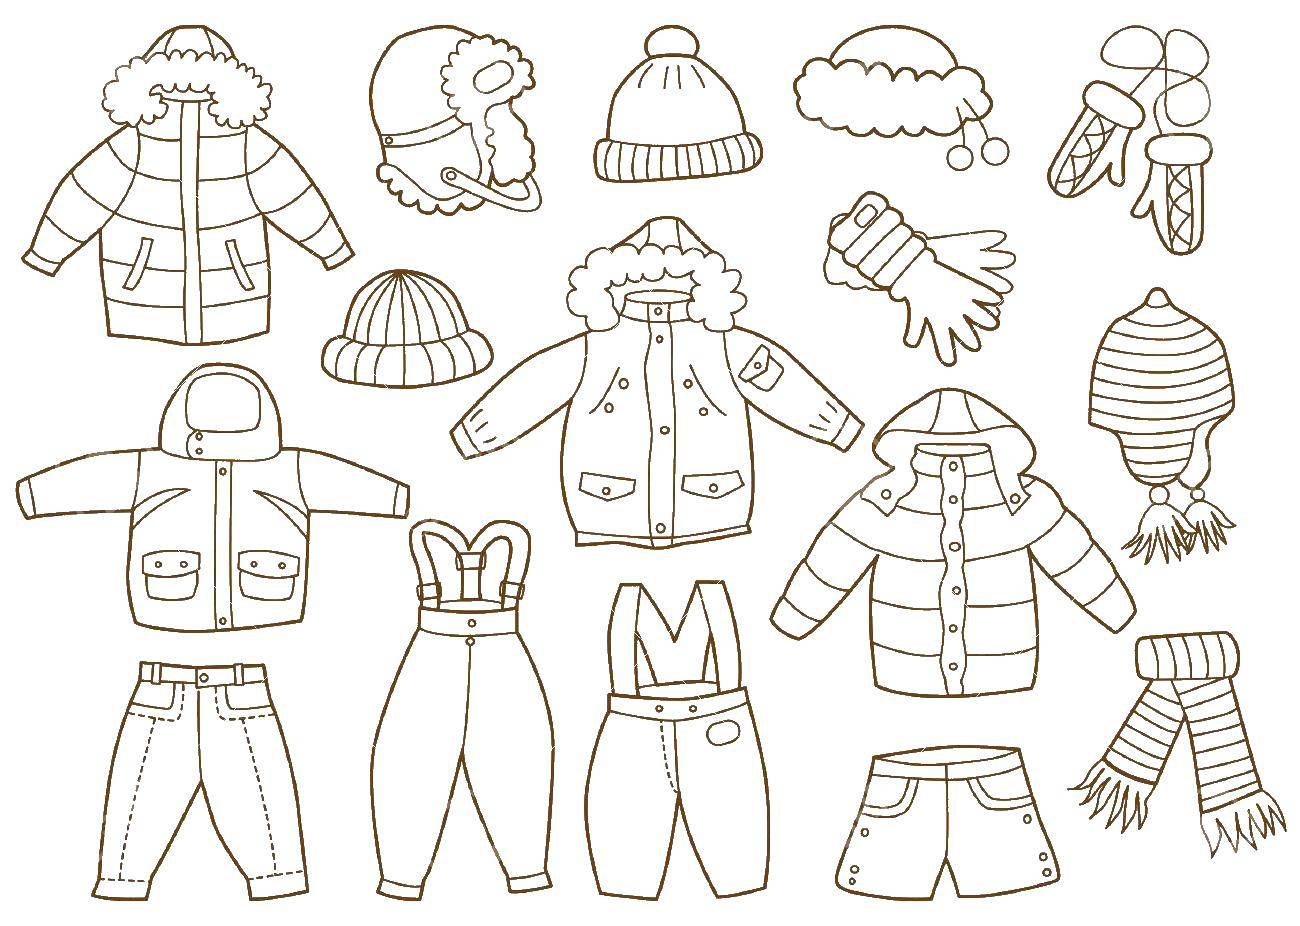 Название: Раскраска Разнообразная одежда, перчатки, головные уборы. Категория: одежда. Теги: одежда, перчатки, шапки.